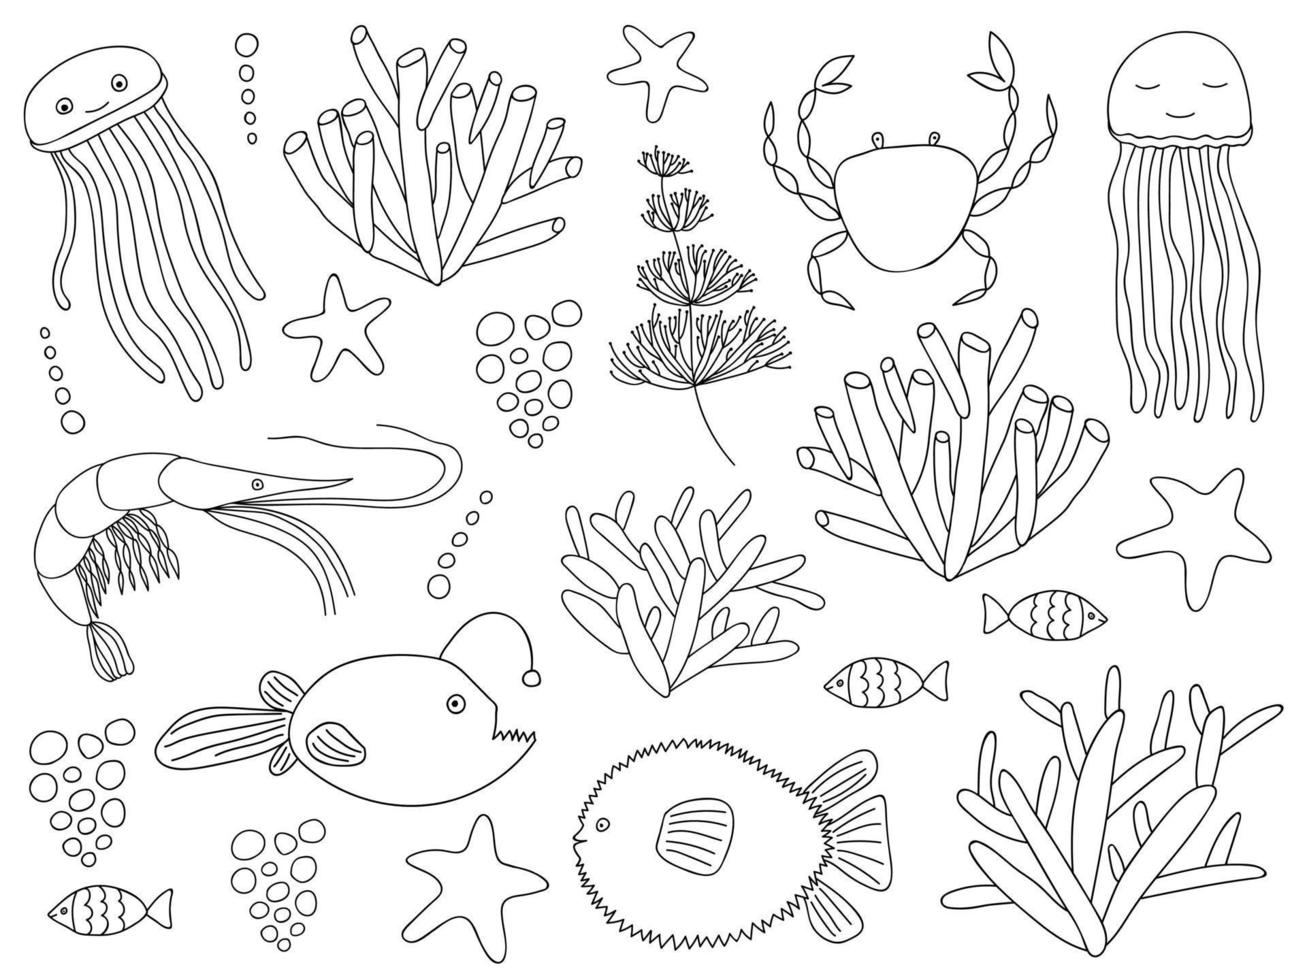 grande garabatear mar elementos colocar. océano, mar vida animal y planta colocar. vector submarino objetos. Medusa, pelota pez, arrecife pez, camarón, cangrejo, rape, coral, algas marinas, hierba marina, estrella de mar.